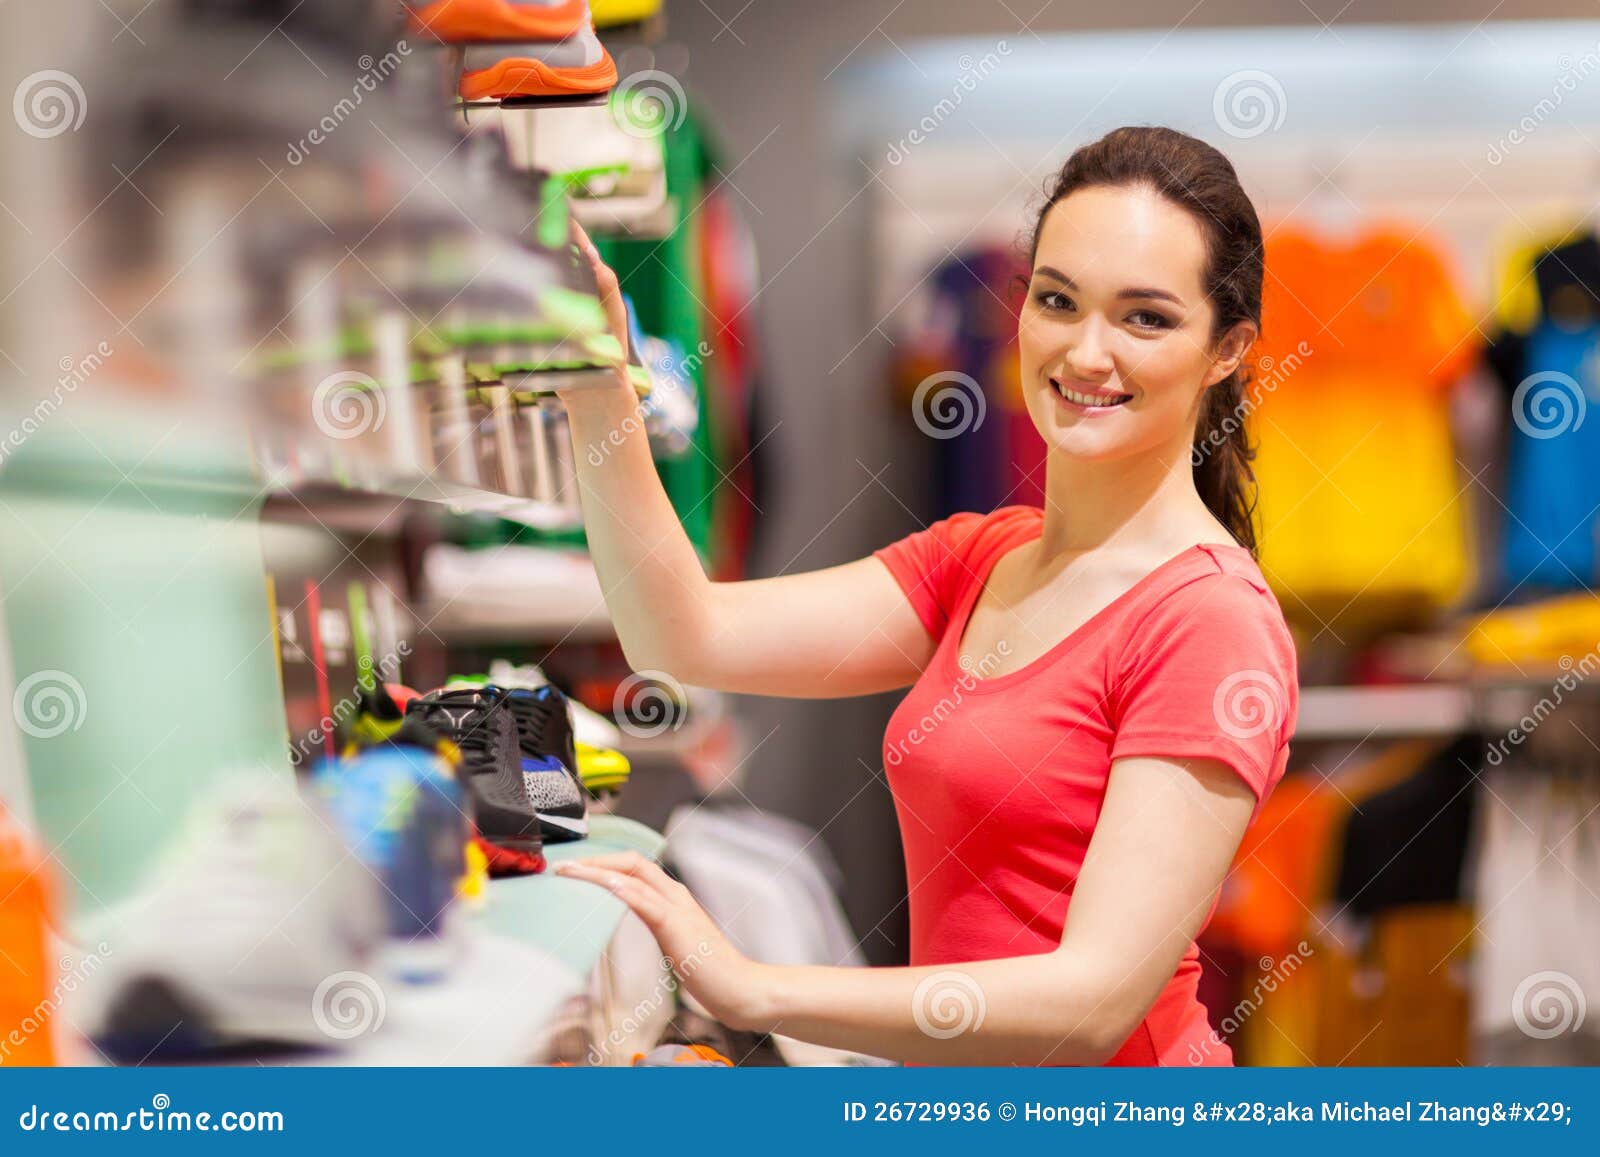 clipart shop assistant - photo #40